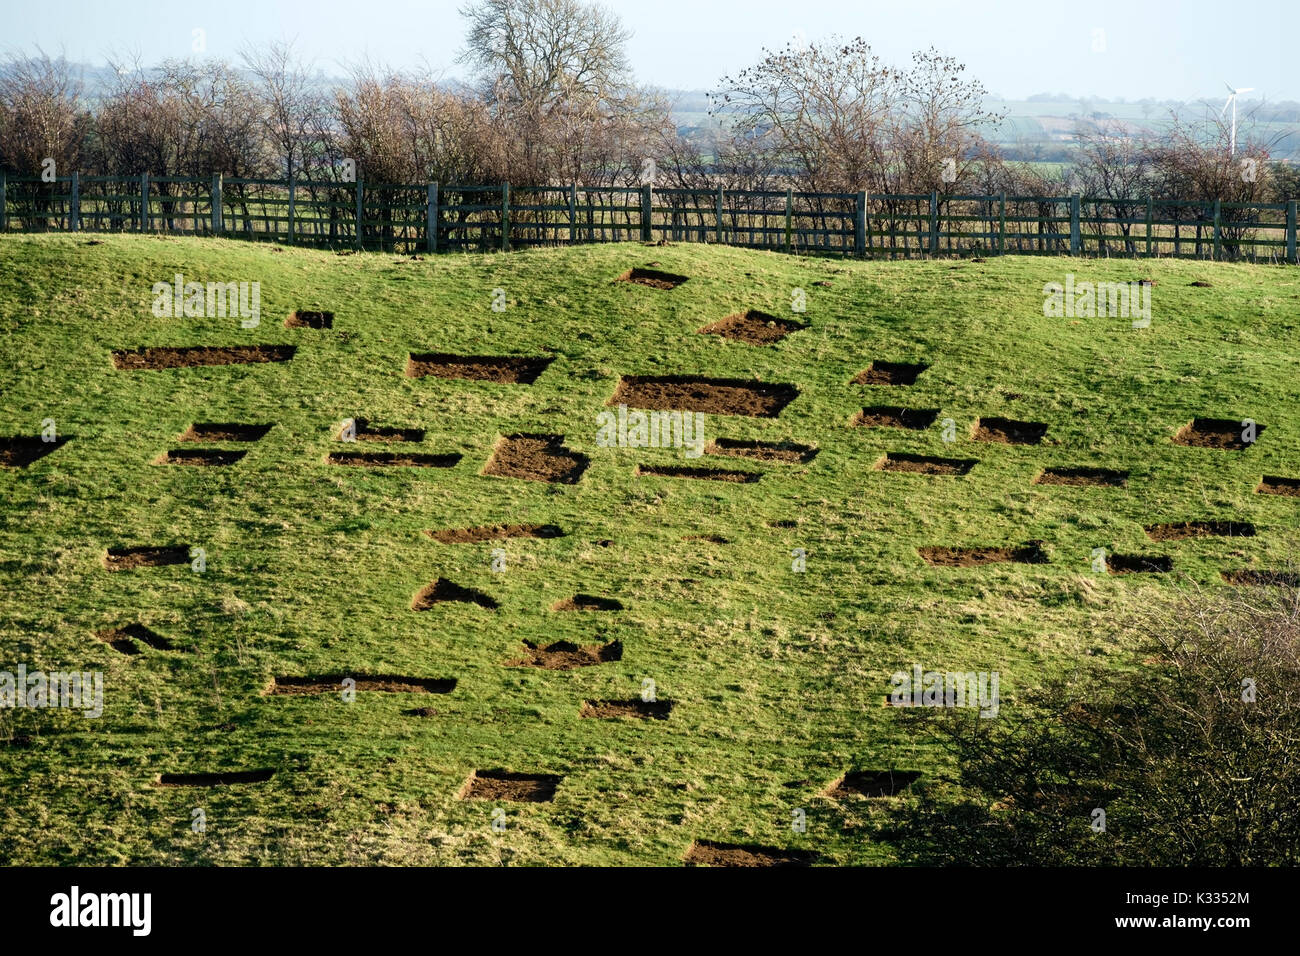 Gazon herbe retiré des correctifs pour réparer l'érosion des rives de l'ancien monument à proximité, âge de fer fort, burrough hill, Leicestershire, England, UK Banque D'Images